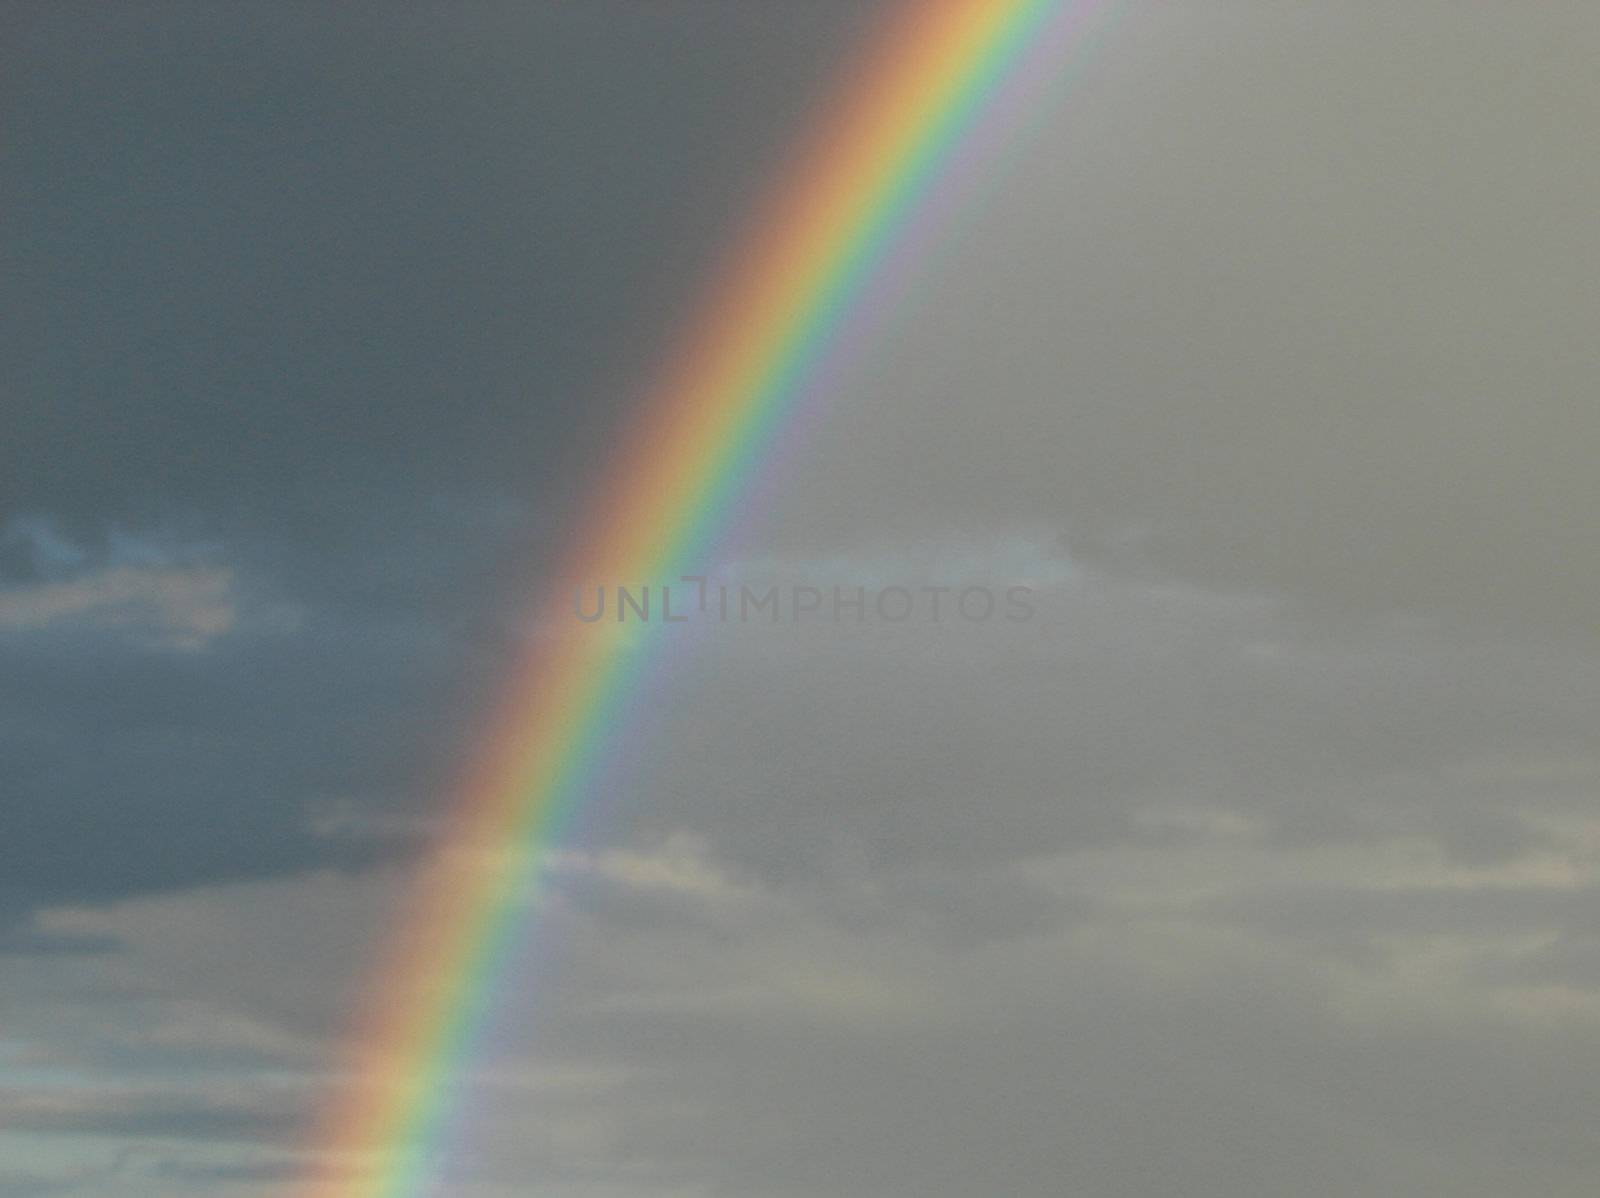 Rainbow_6 by Thorvis